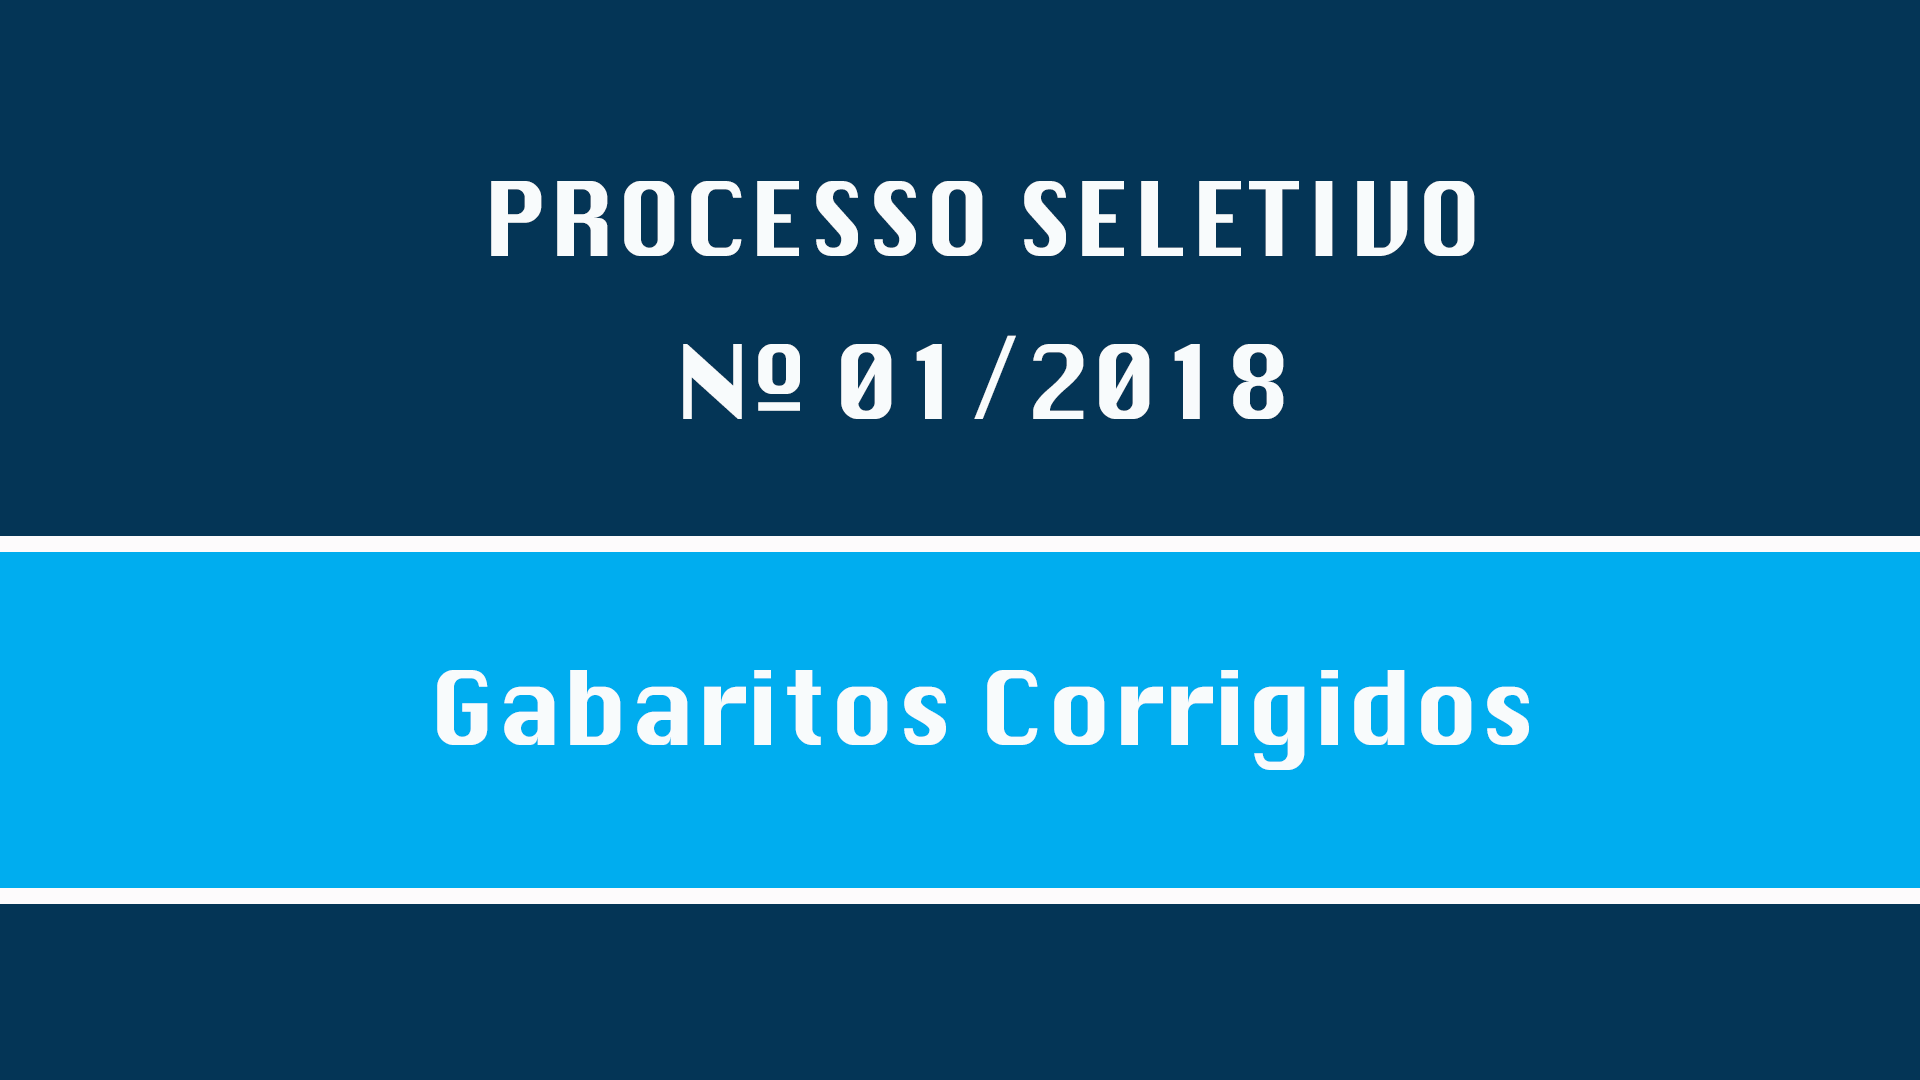 PROCESSO SELETIVO Nº 001/2018 -GABARITOS CORRIGIDOS